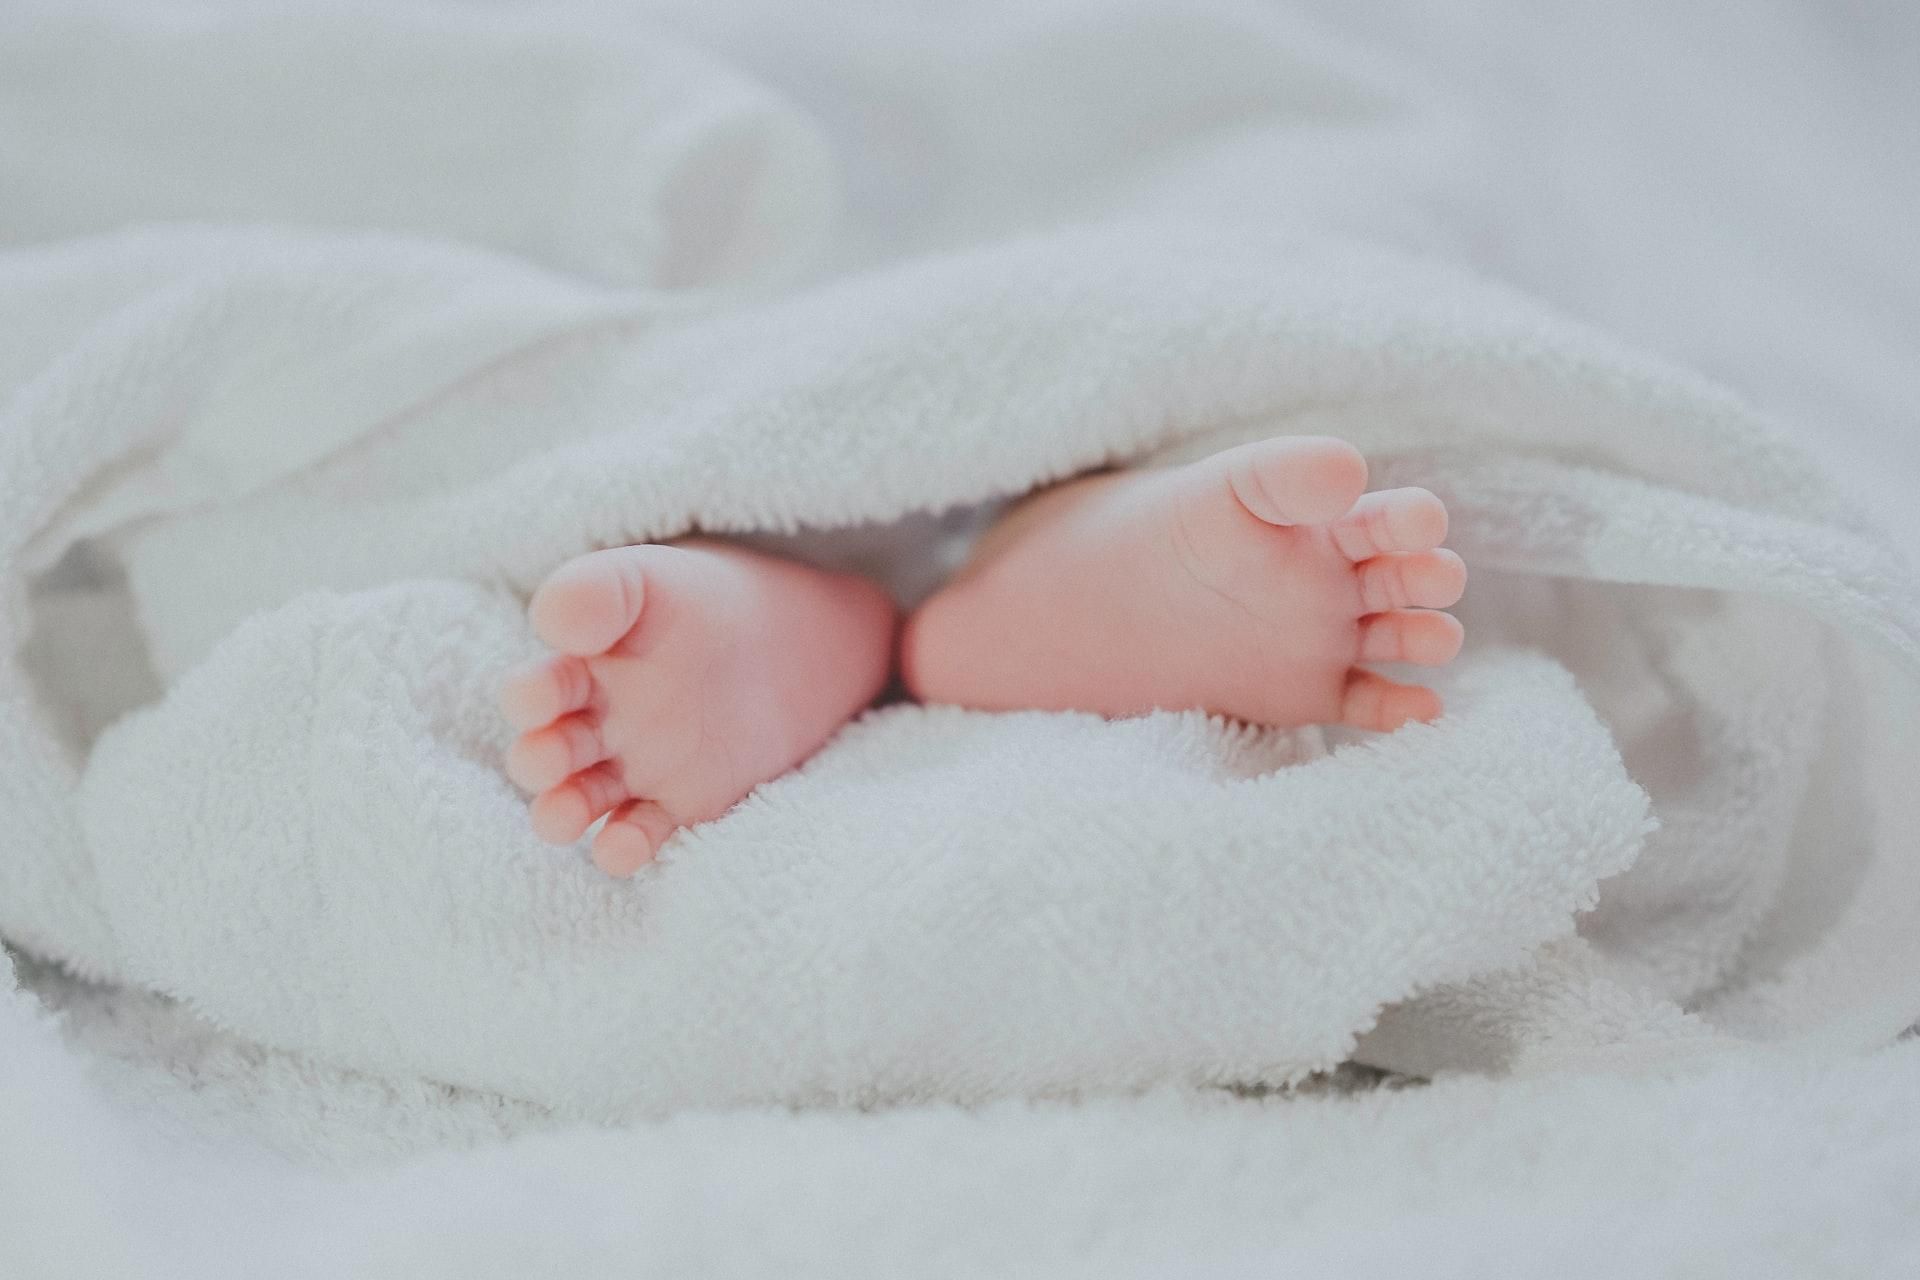 У Чернівцях померло немовля: батьки звинувачують медиків - Новини Здоров’я